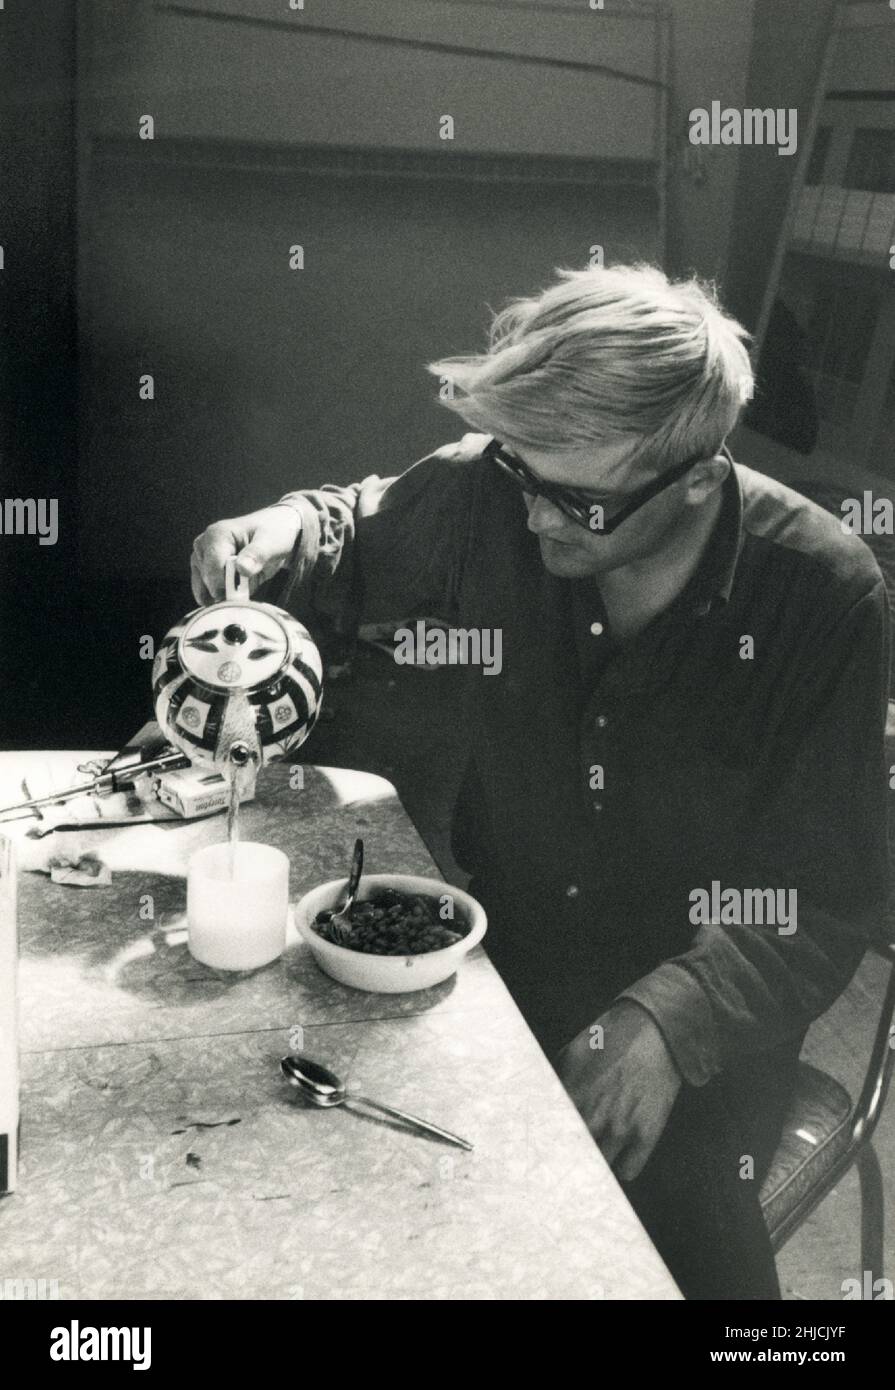 Der Maler David Hockney macht 1966 in seinem Atelier in Los Angeles Tee. Hockney war ein wichtiger Beitrag zur britischen Pop-Art-Bewegung der 1960er Jahre und lebt heute in Los Angeles, Kalifornien. Stockfoto